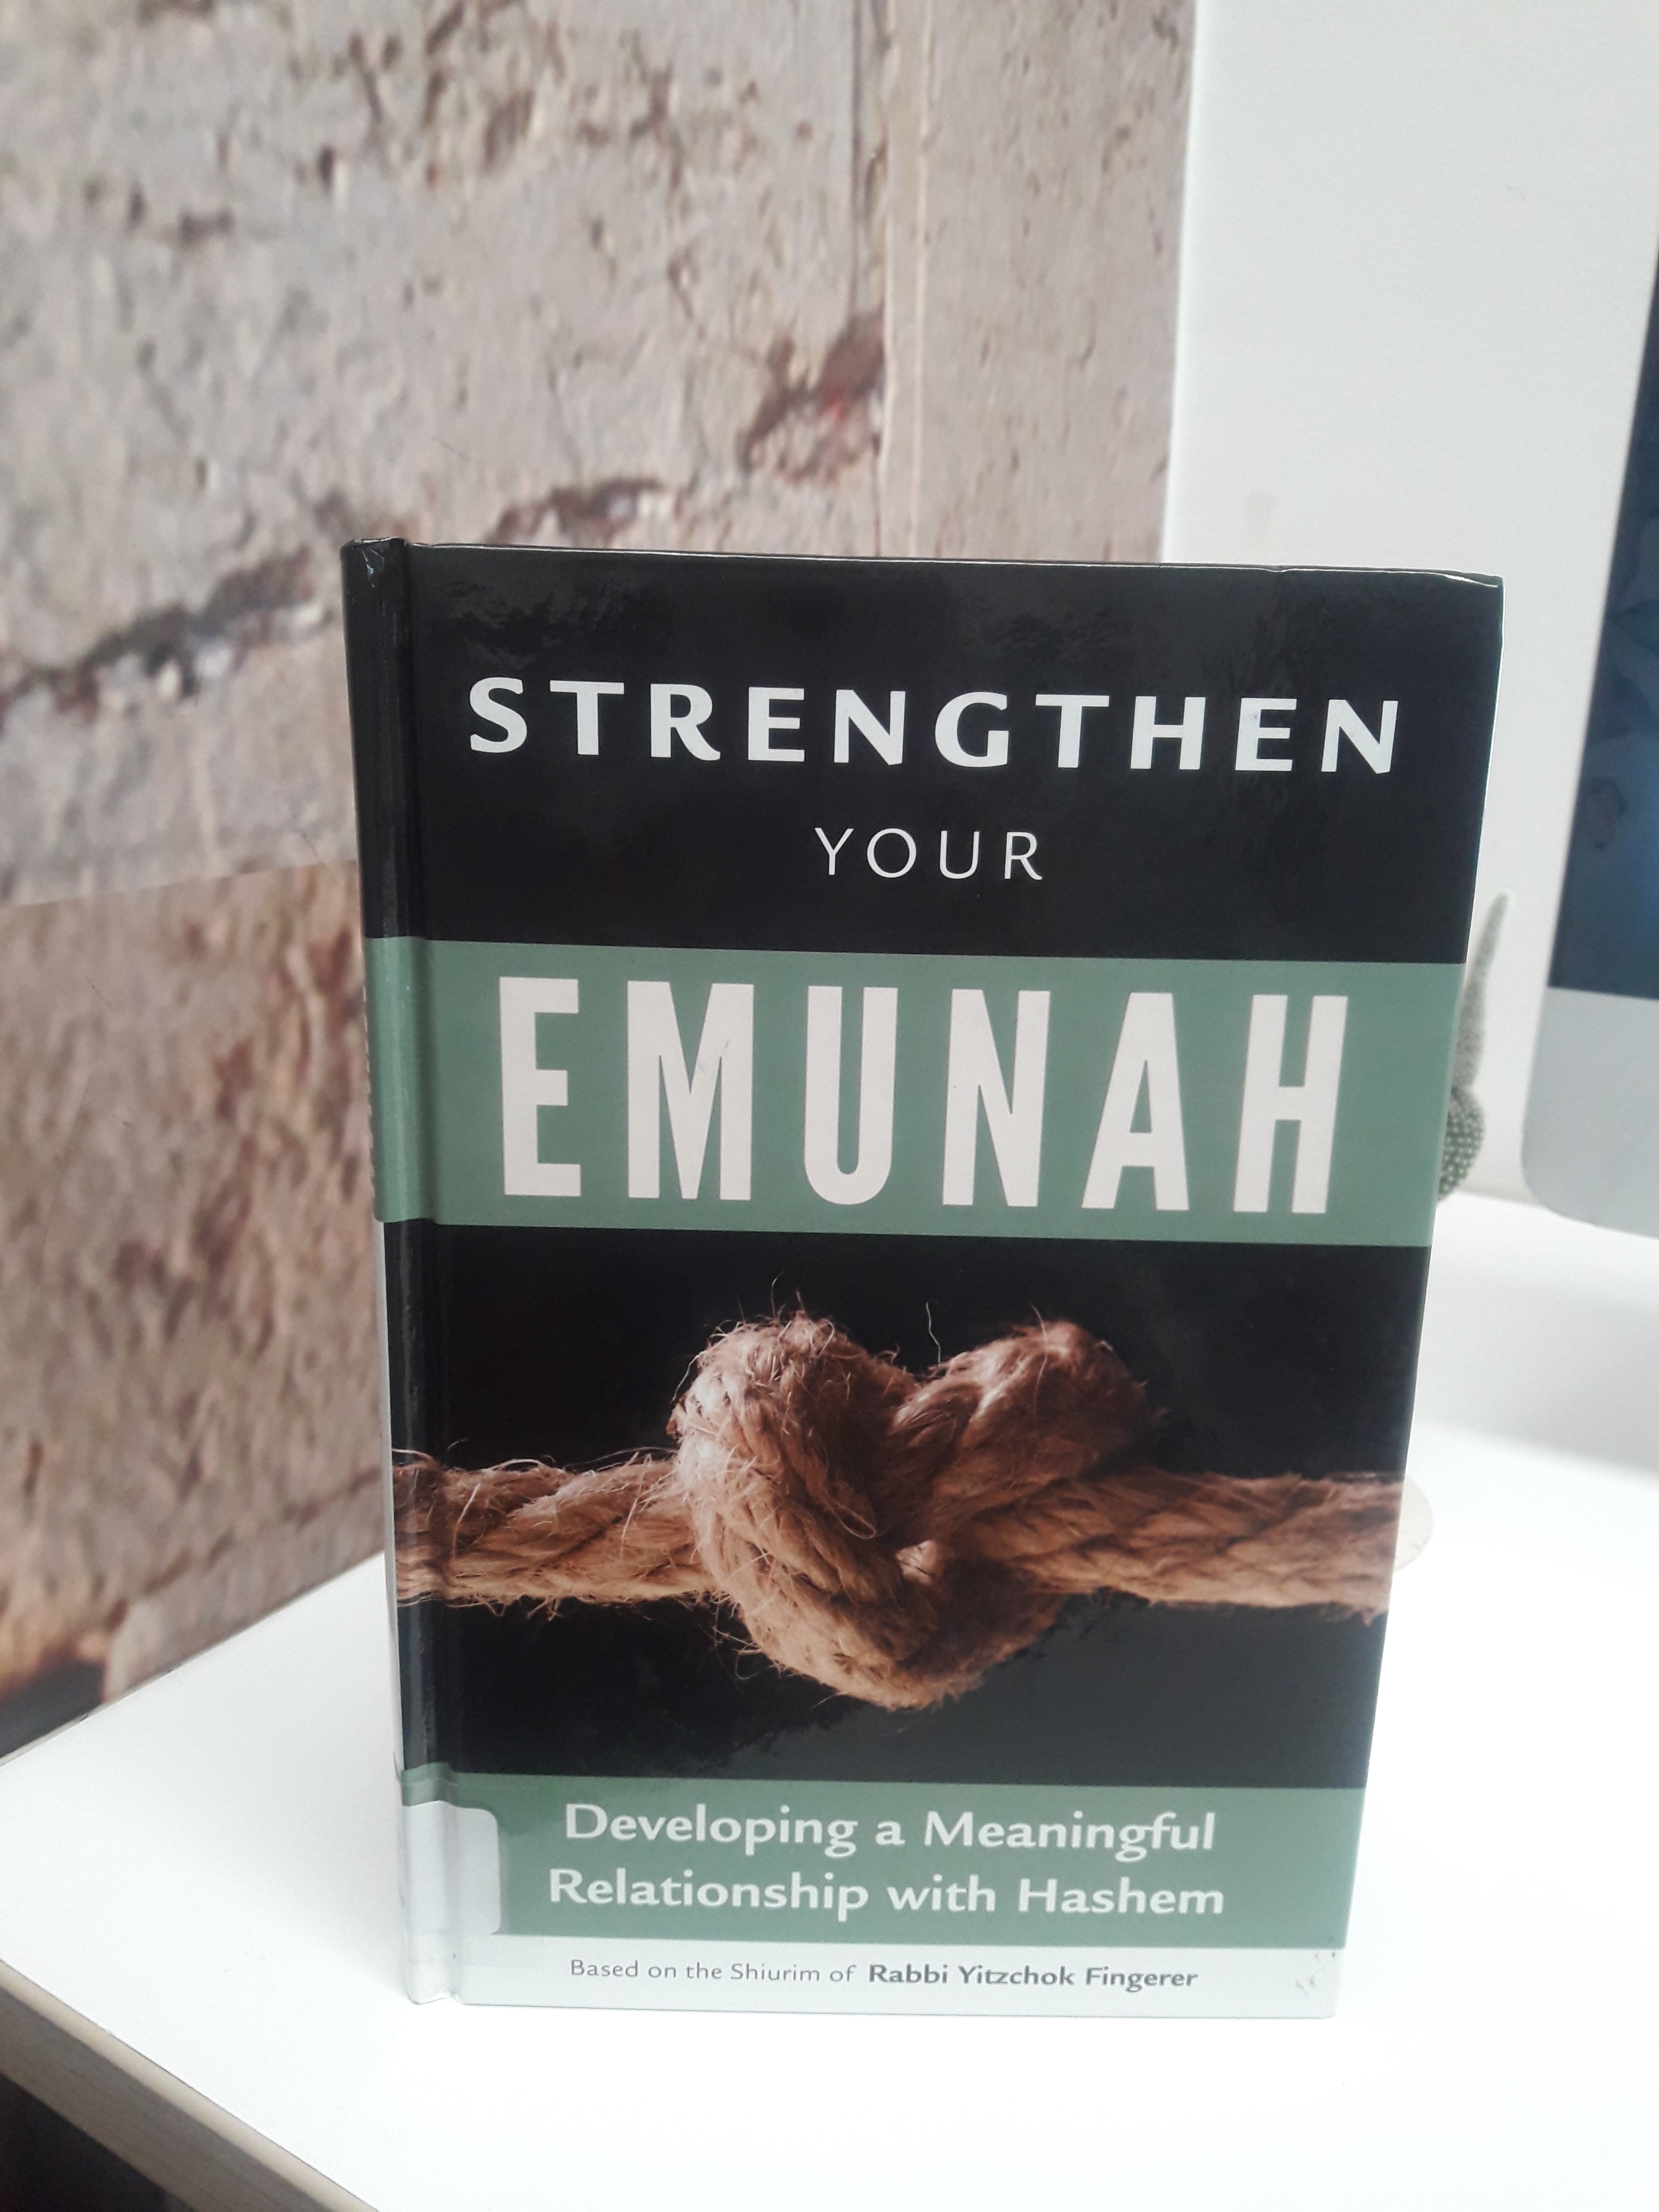 Strengthen your emunah